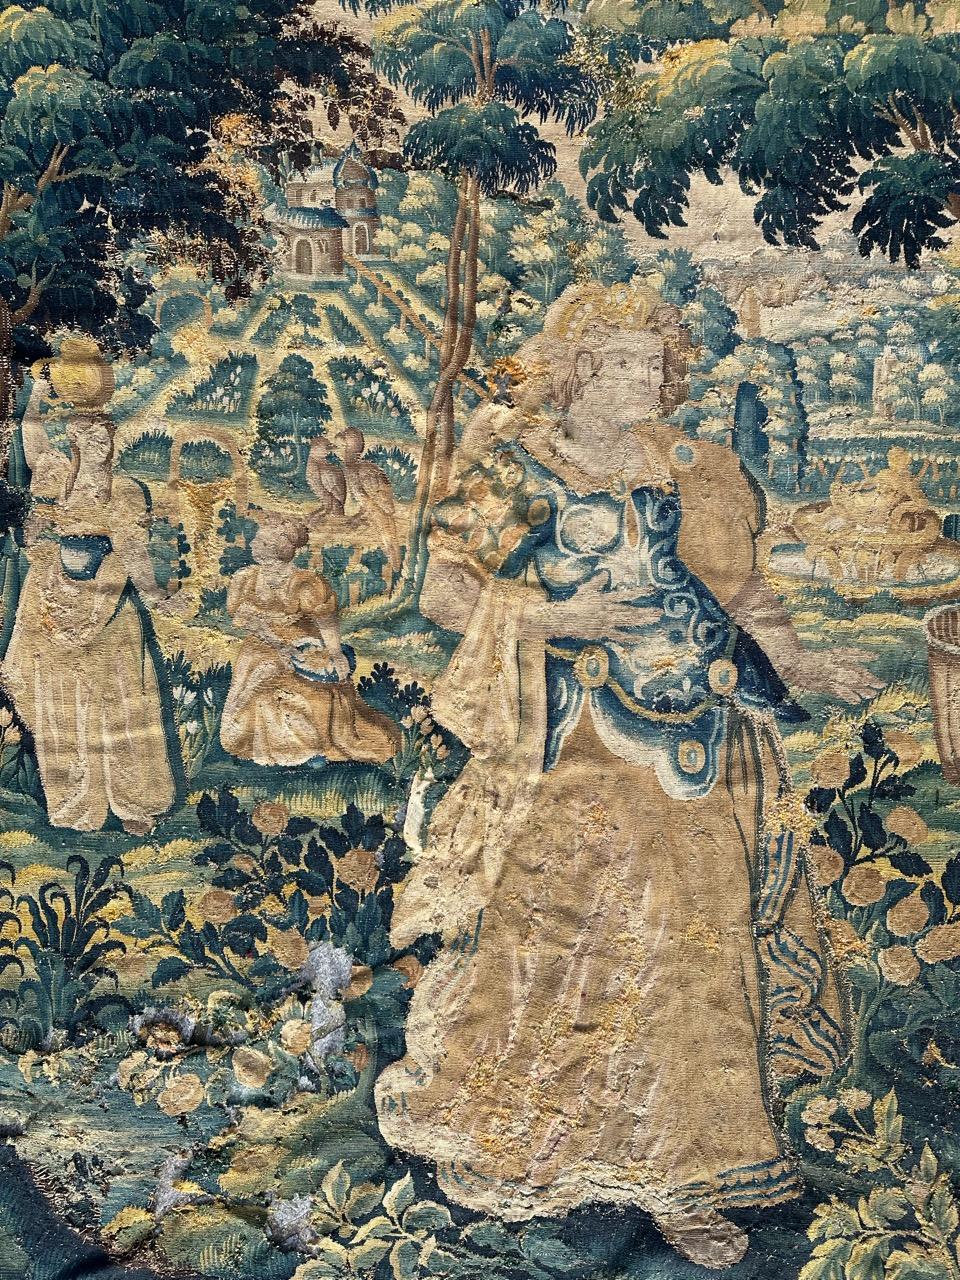 Sehr schönes und altes französisches Wandteppichfragment aus der Mitte des 16. Jahrhunderts, mit schönem Design seiner Zeit und schönen natürlichen Farben, komplett handgewebt mit Wolle und Seide. 
Alle Löcher werden von Fachleuten mit den alten